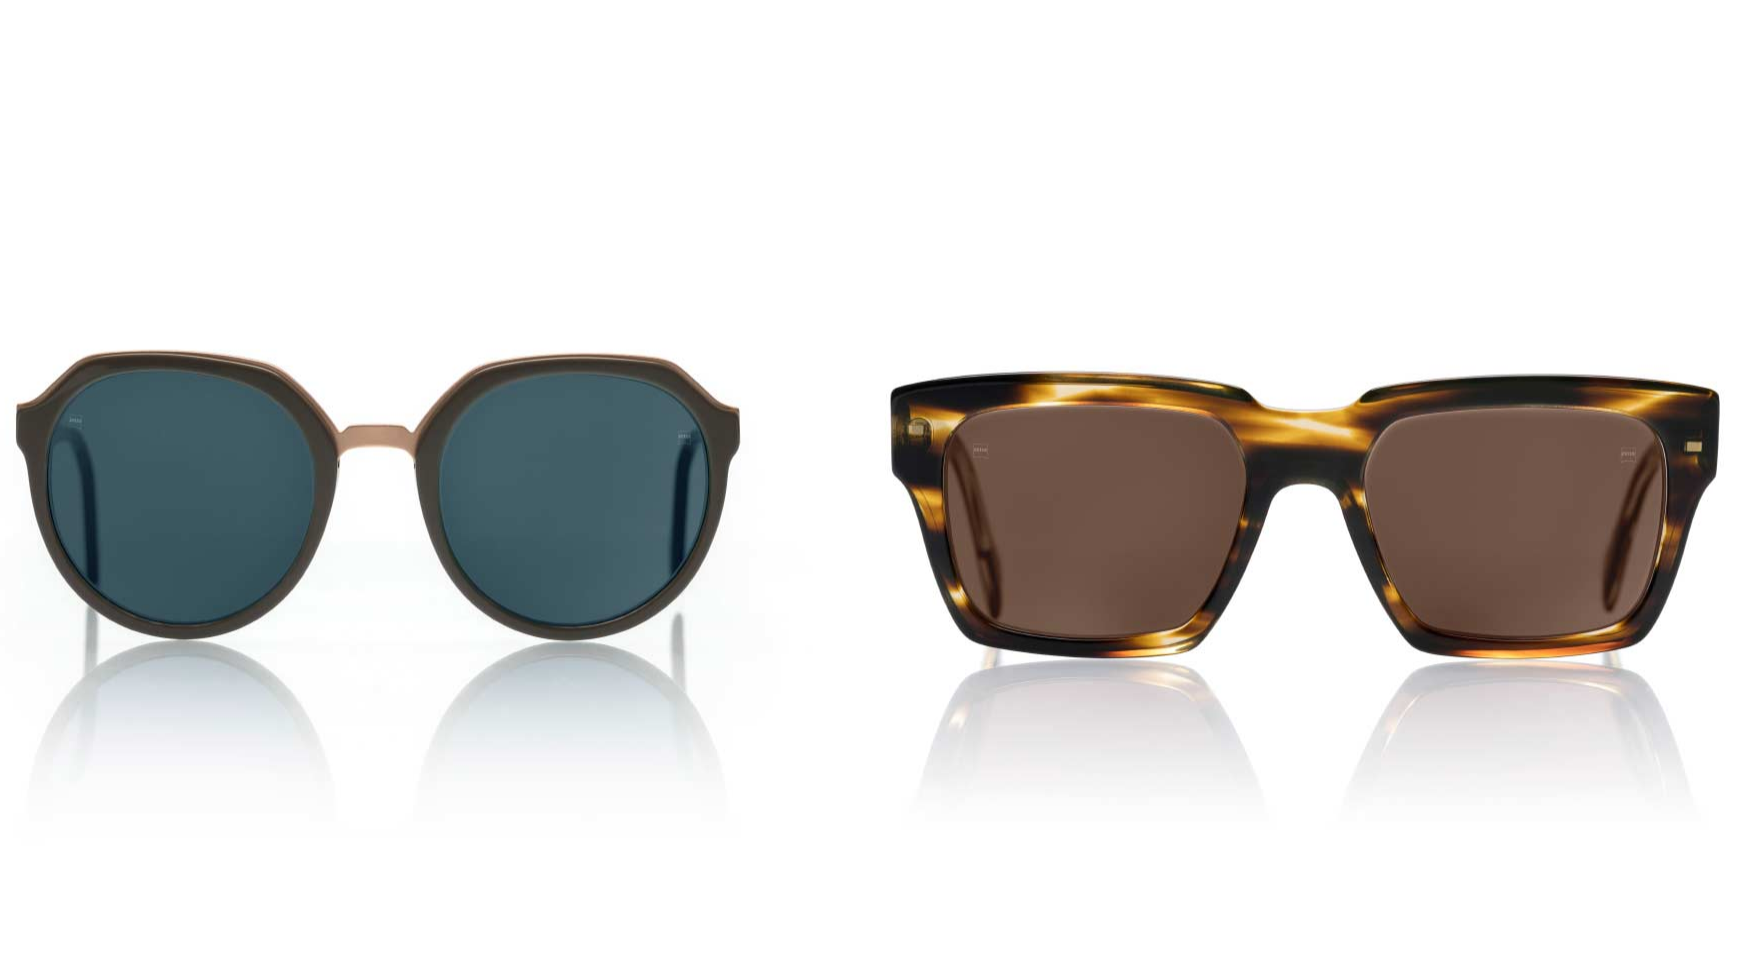 ZEISS PhotFusion X, fås i naturlige, moderne farver - ligesom almindelige solbriller